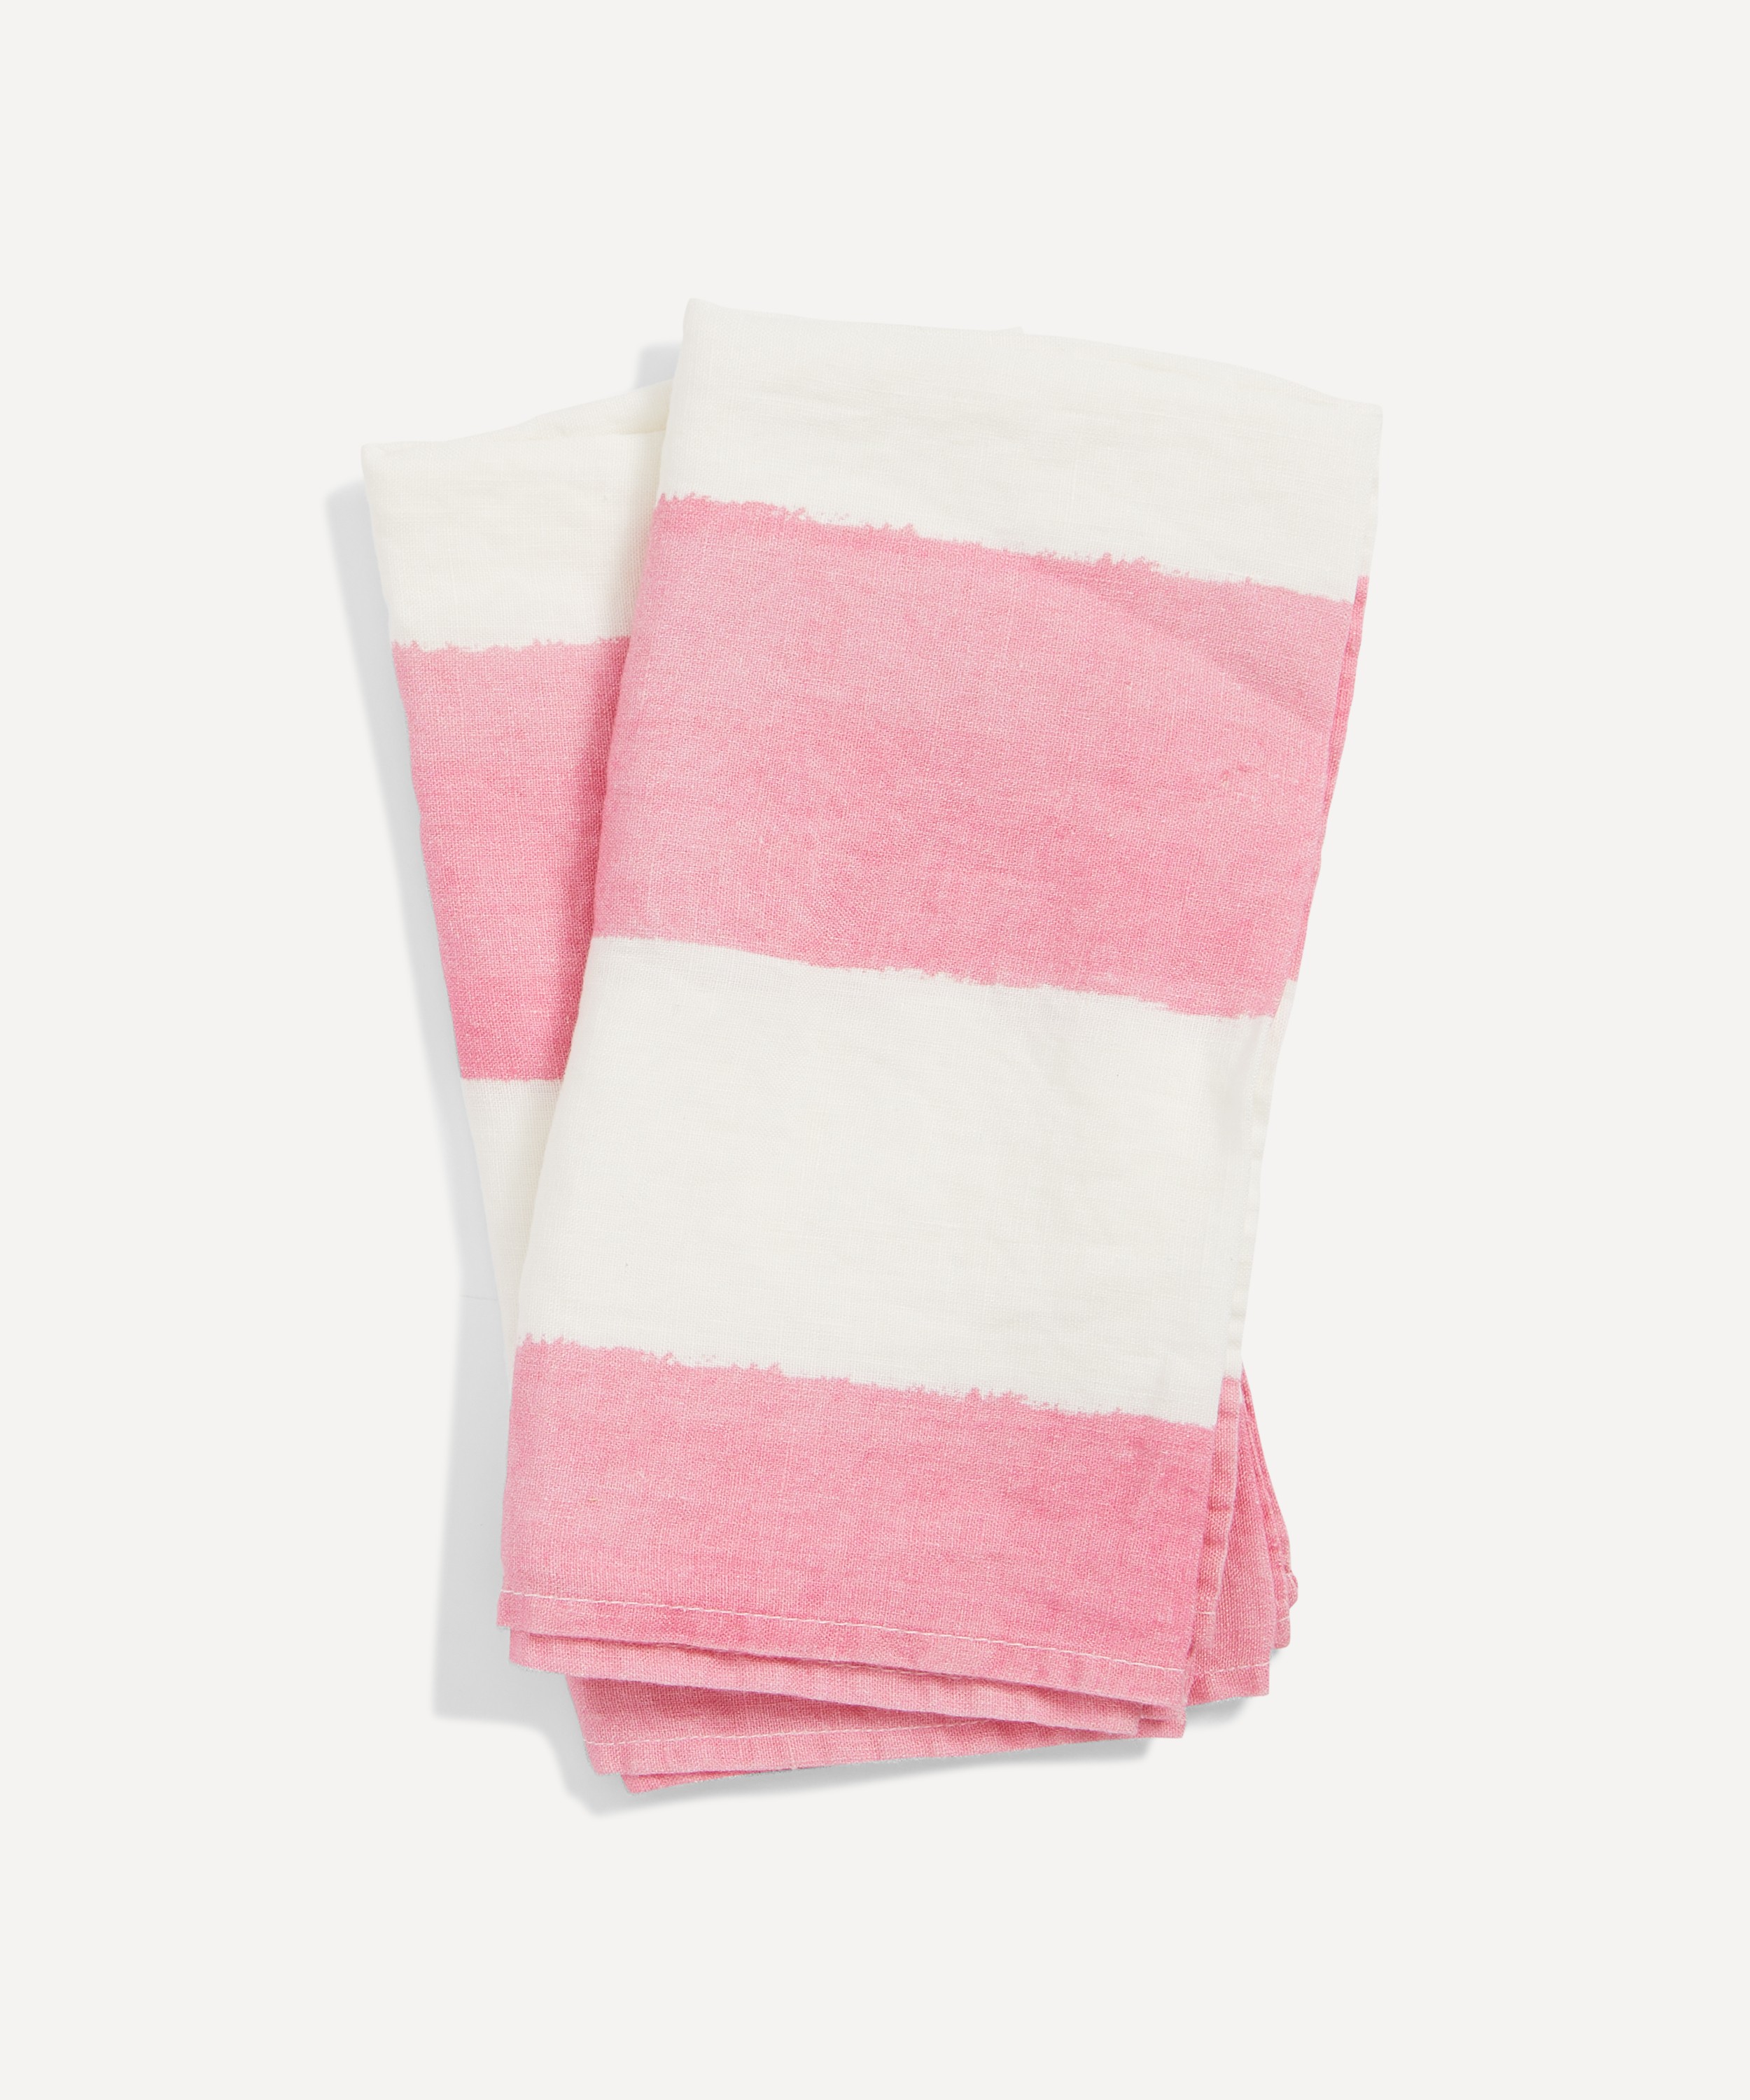 Summerill & Bishop - Rose Pink Stripe 50x50cm Linen Napkins Set of Two image number 0